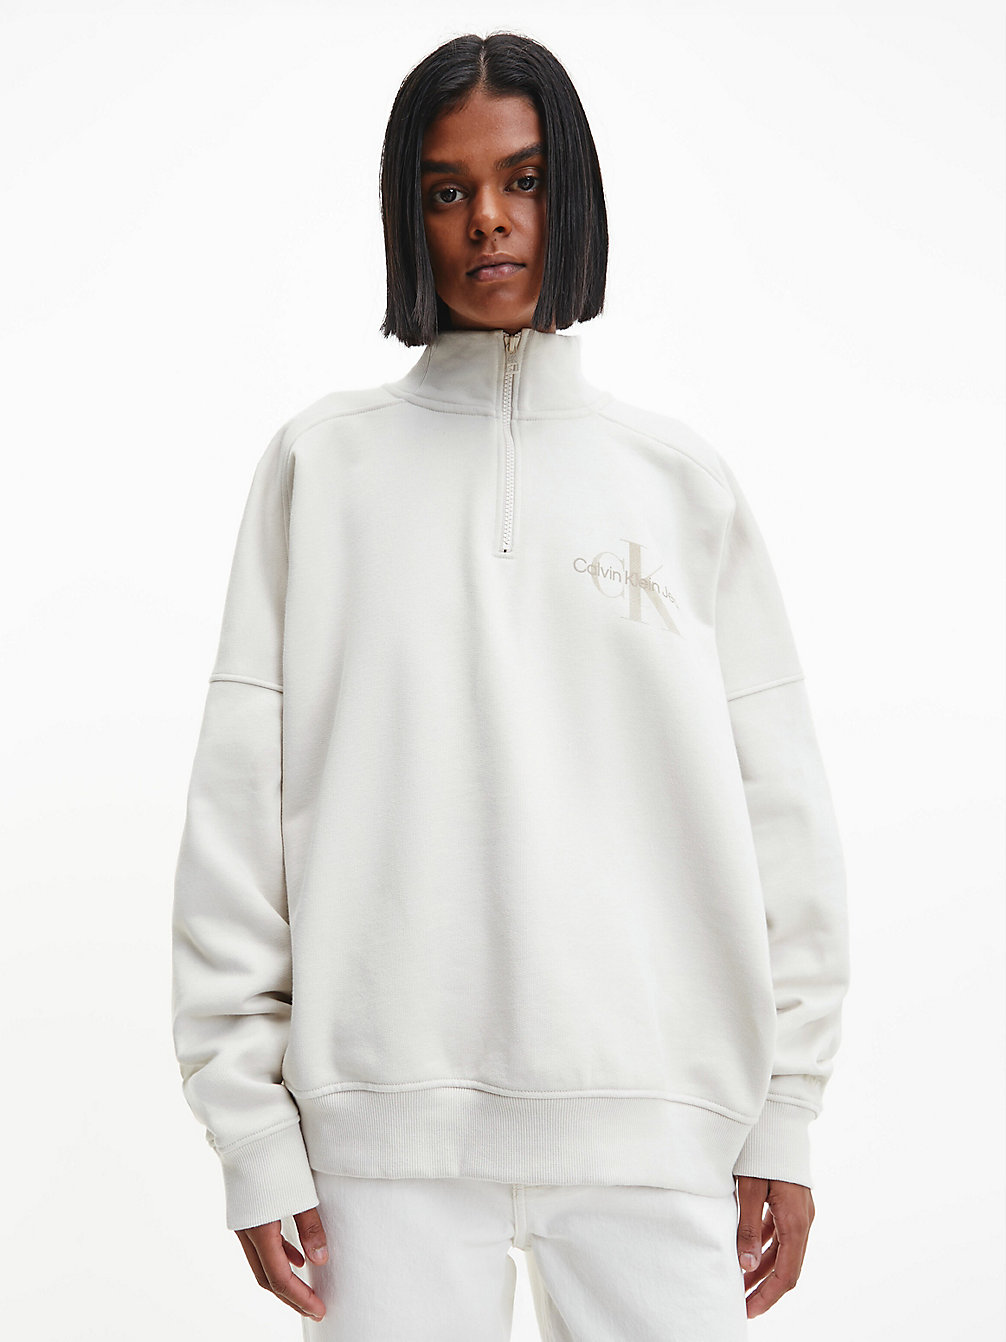 EGGSHELL Unisex Zip Neck Sweatshirt undefined unisex Calvin Klein